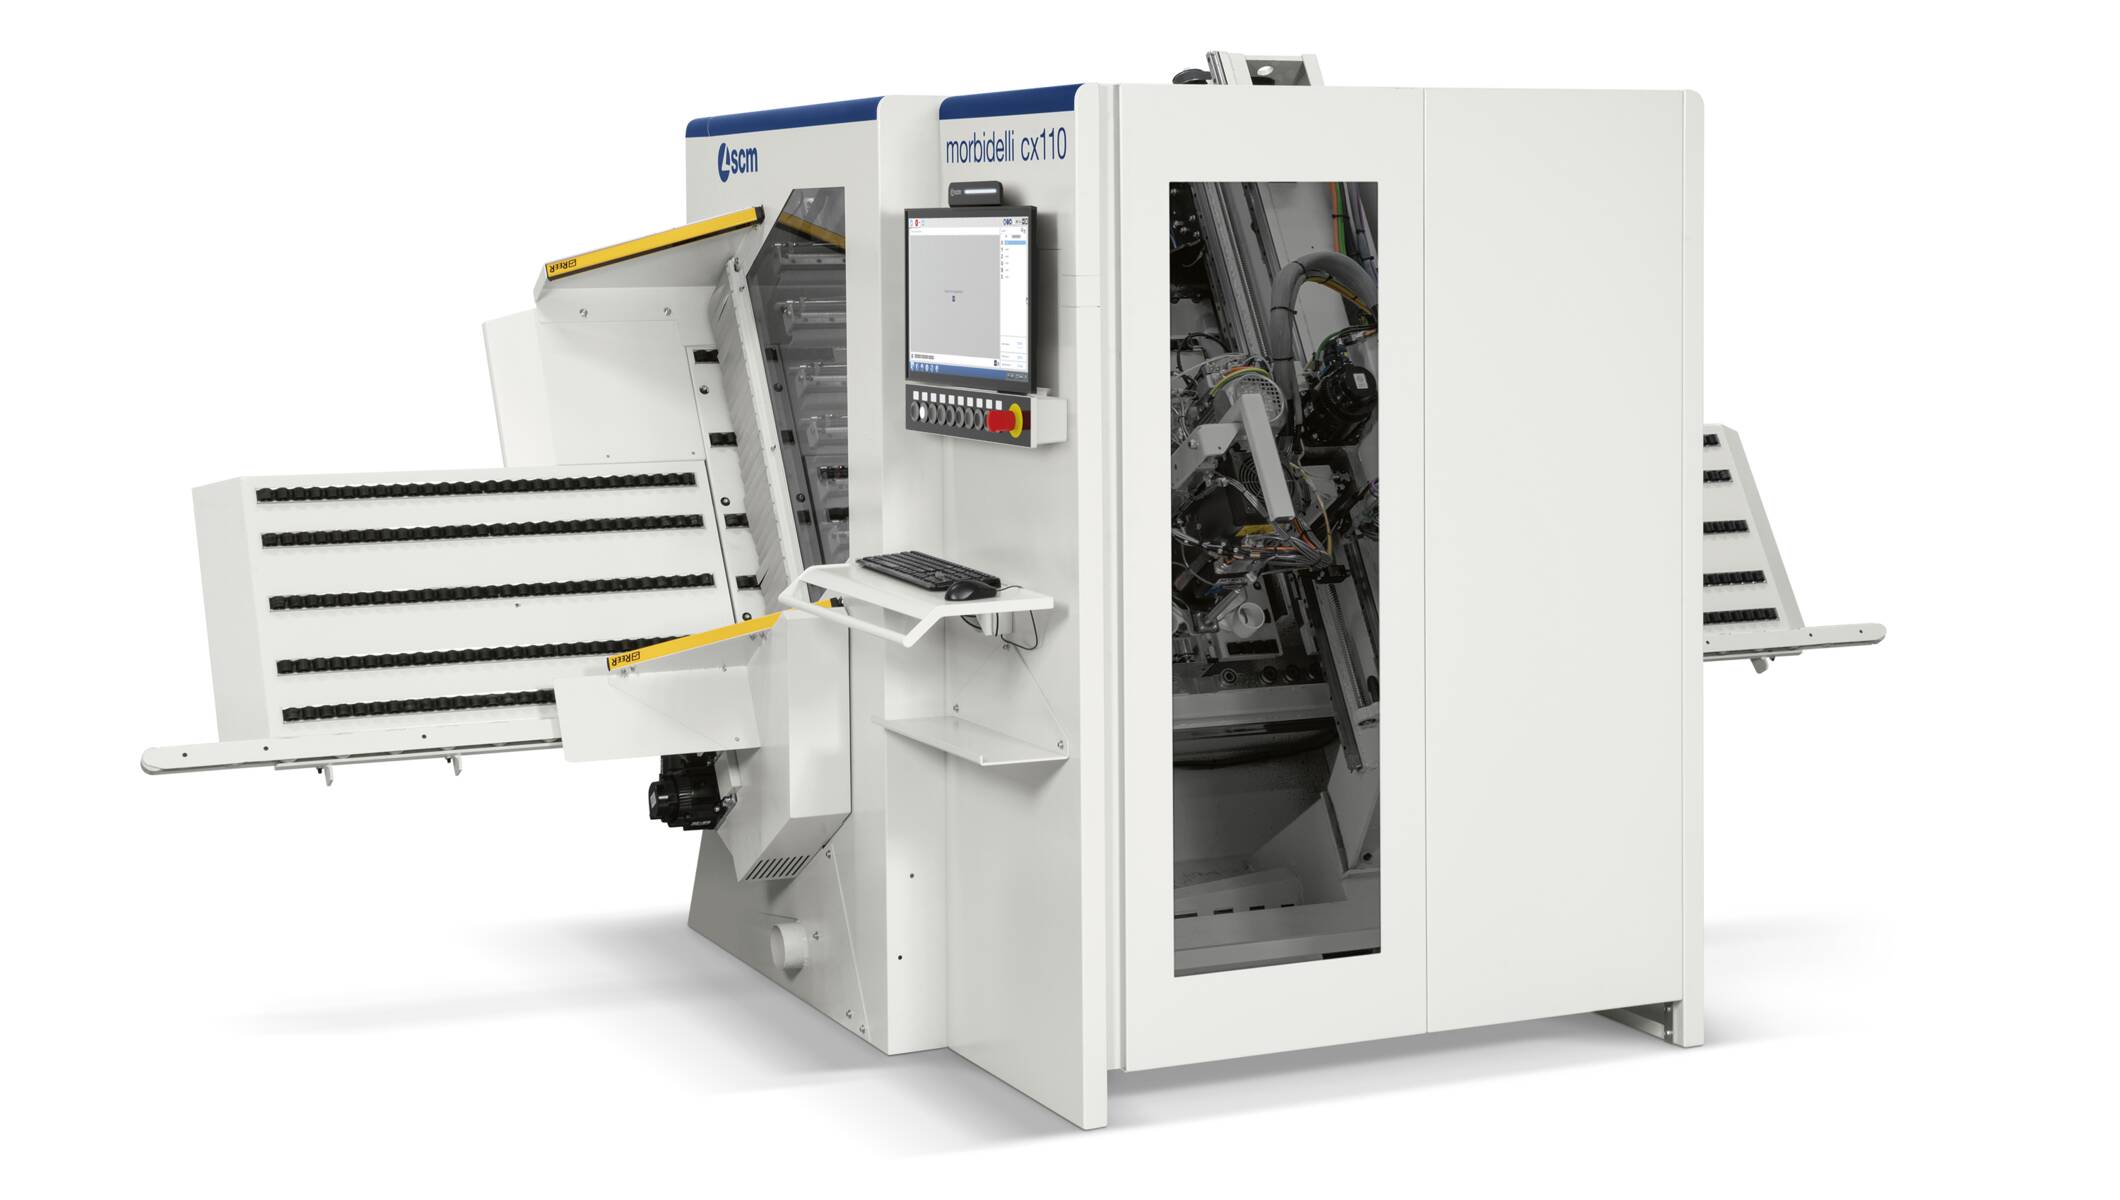 Delik makinaları - CNC delik makinaları - morbidelli cx110